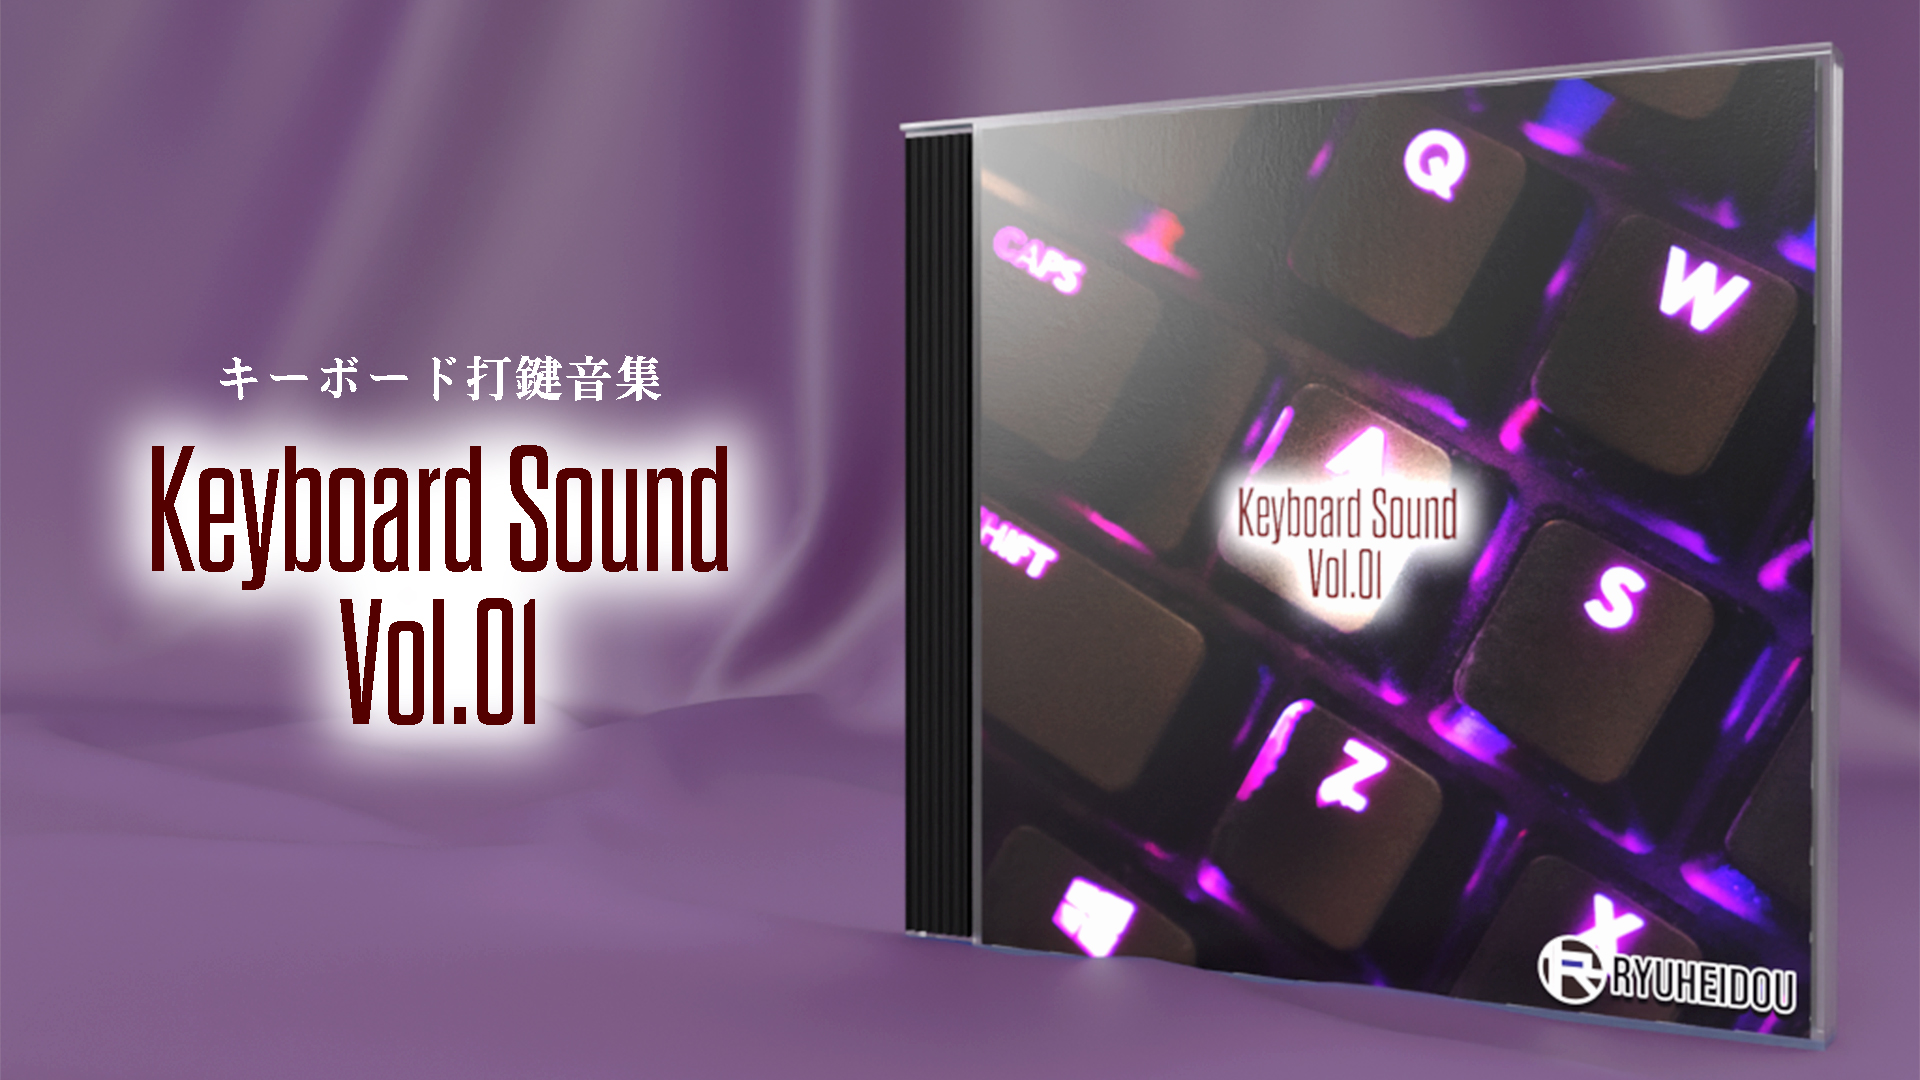 効果音パック「Keyboard Sound Vol.01」の商品イメージ画像